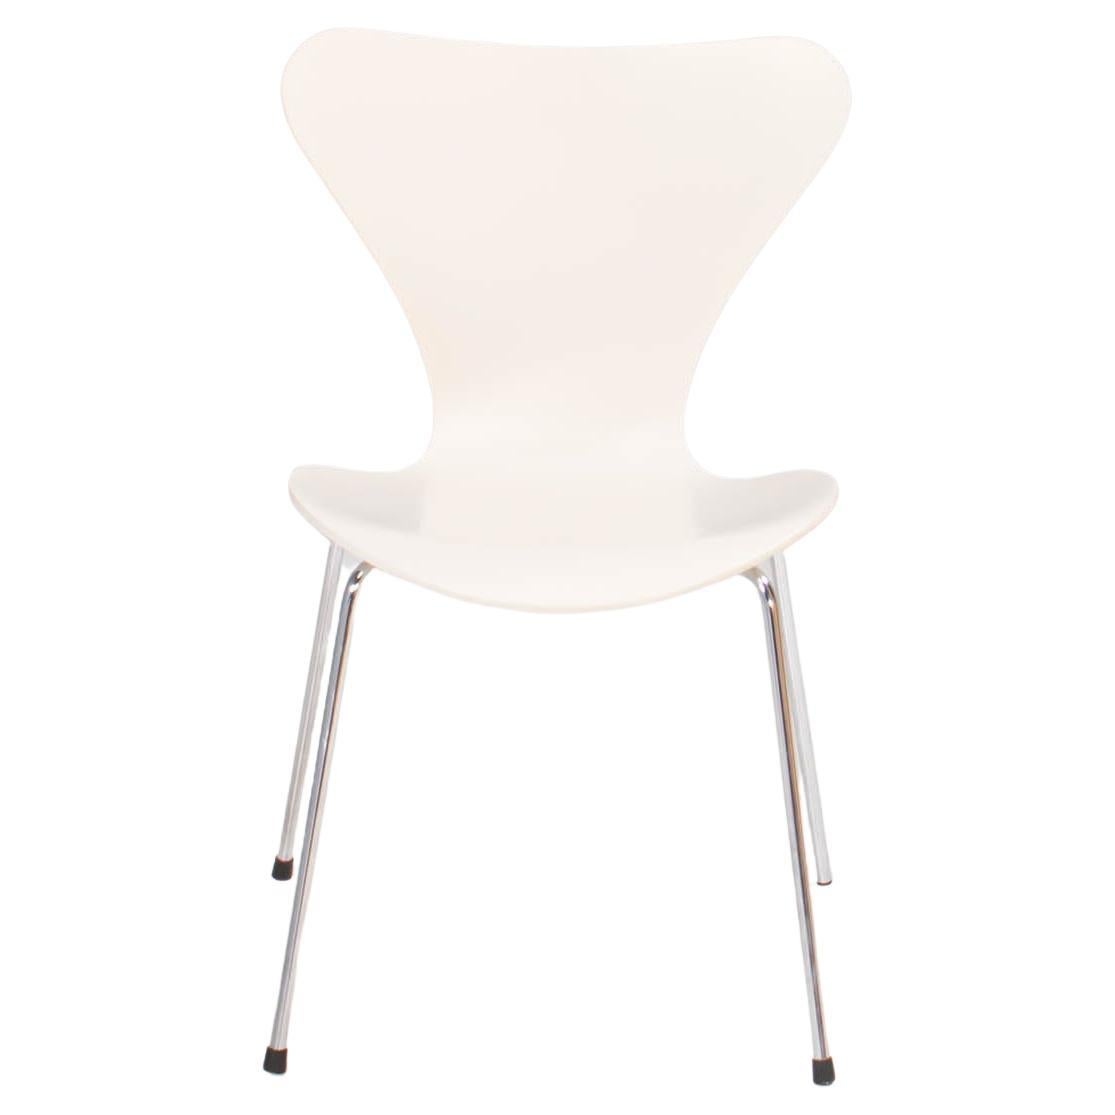 Arne Jacobsen for Fritz Hansen White Series 7 Dining Chairs